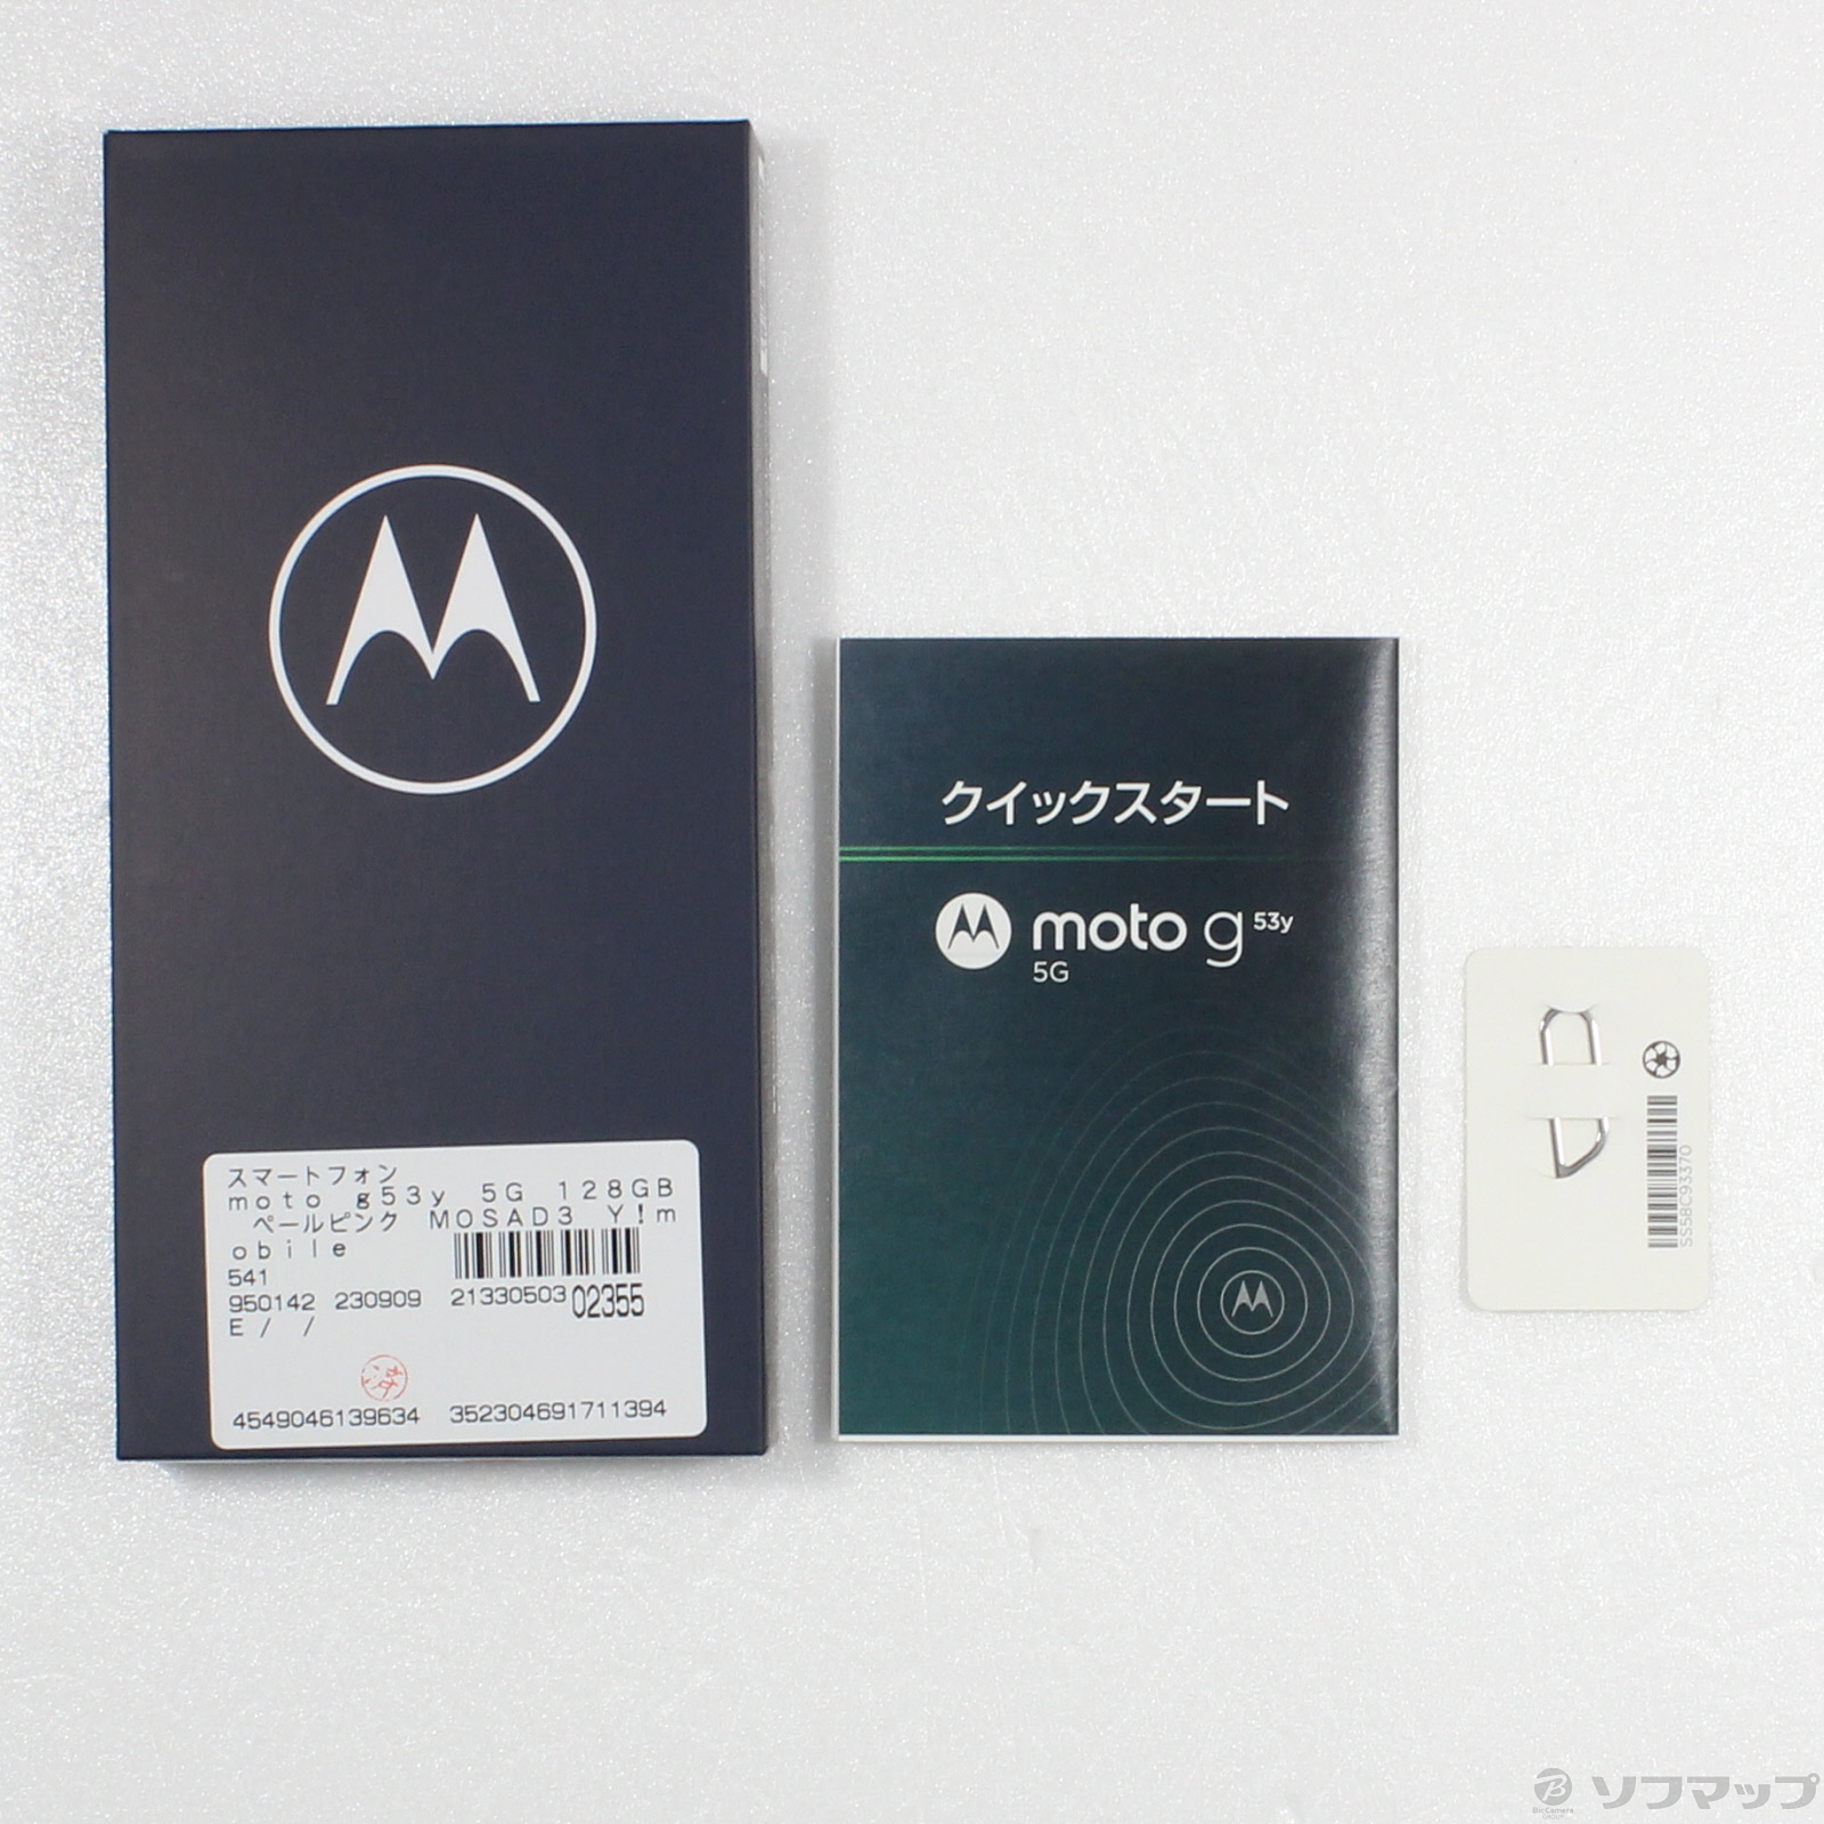 中古】moto g53y 5G 128GB ペールピンク MOSAD3 Y!mobile